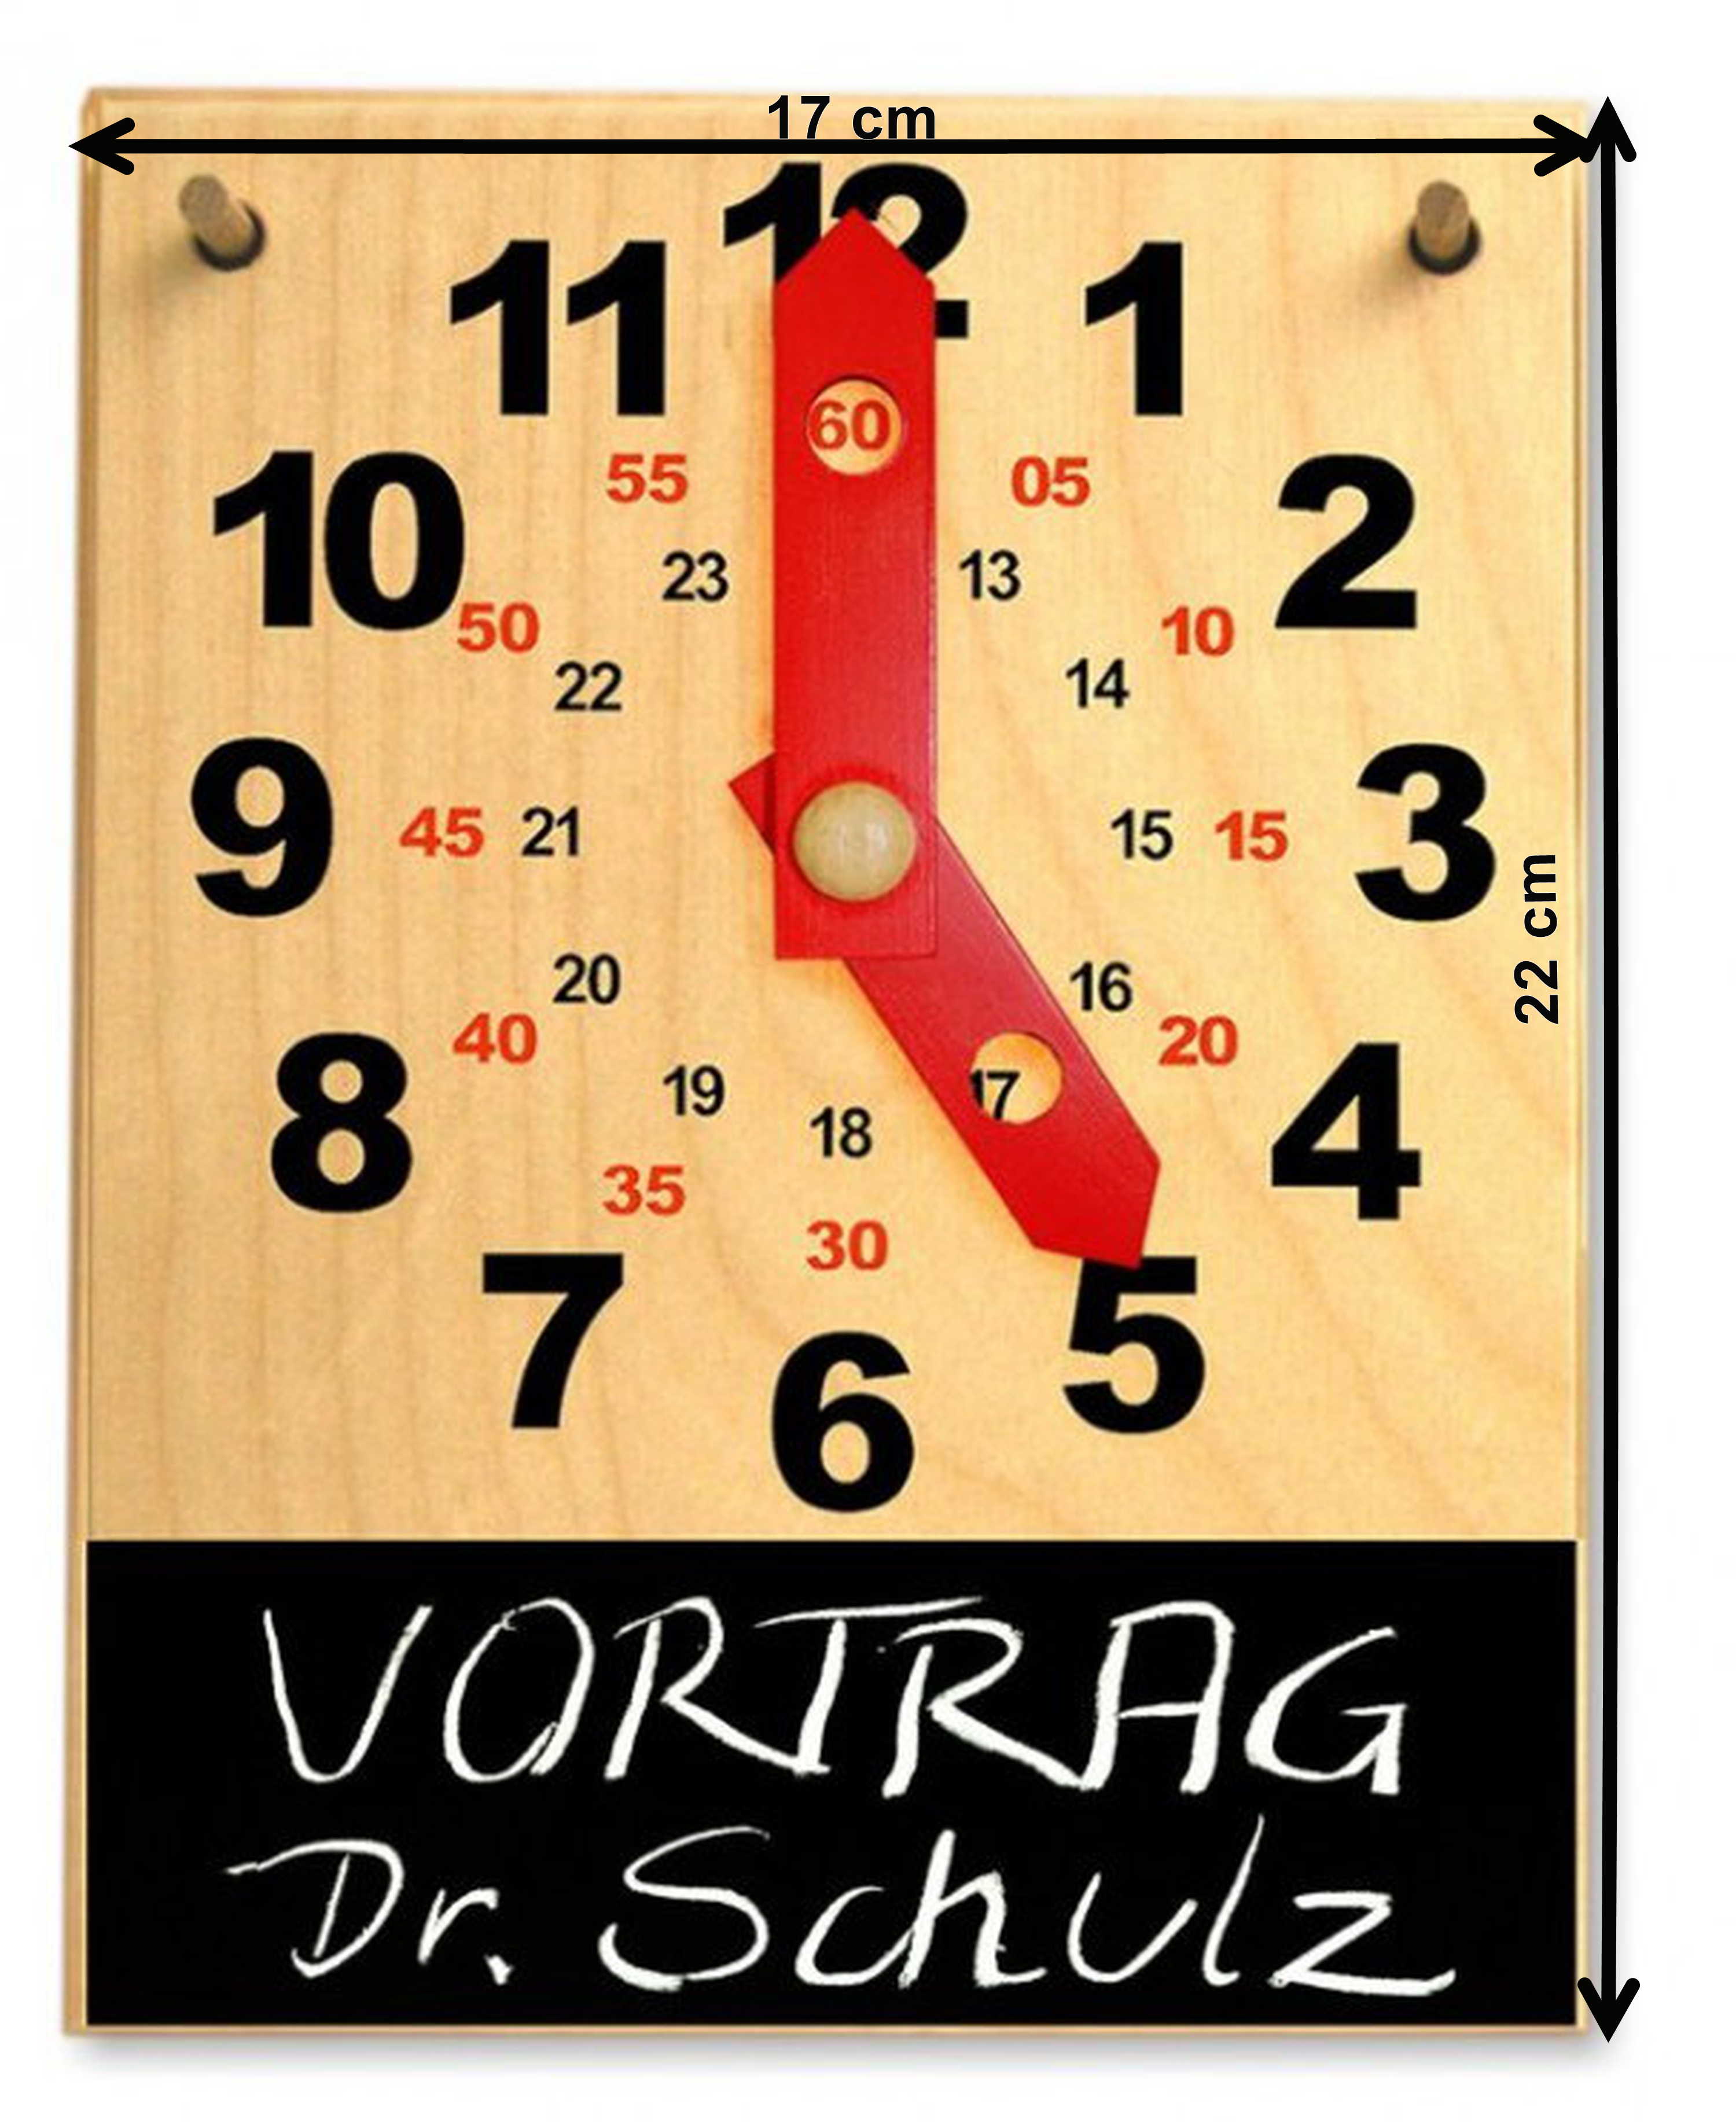 Holzkalender mit Aktionsuhr und Kreide (DE) 